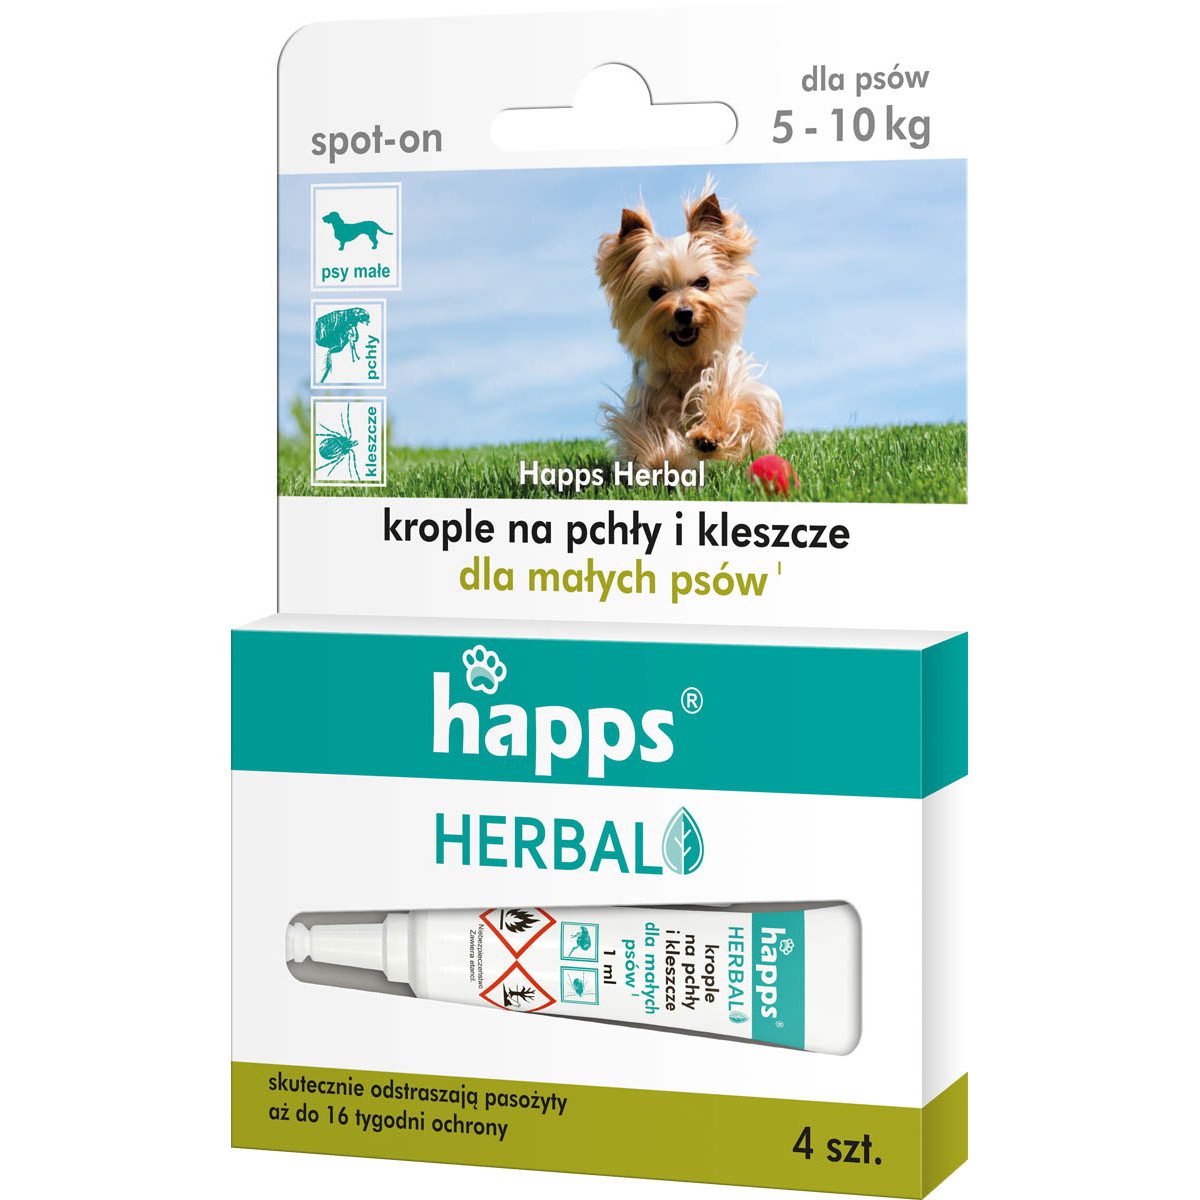 Happs HERBAL – krople na pchły i kleszcze dla małych psów